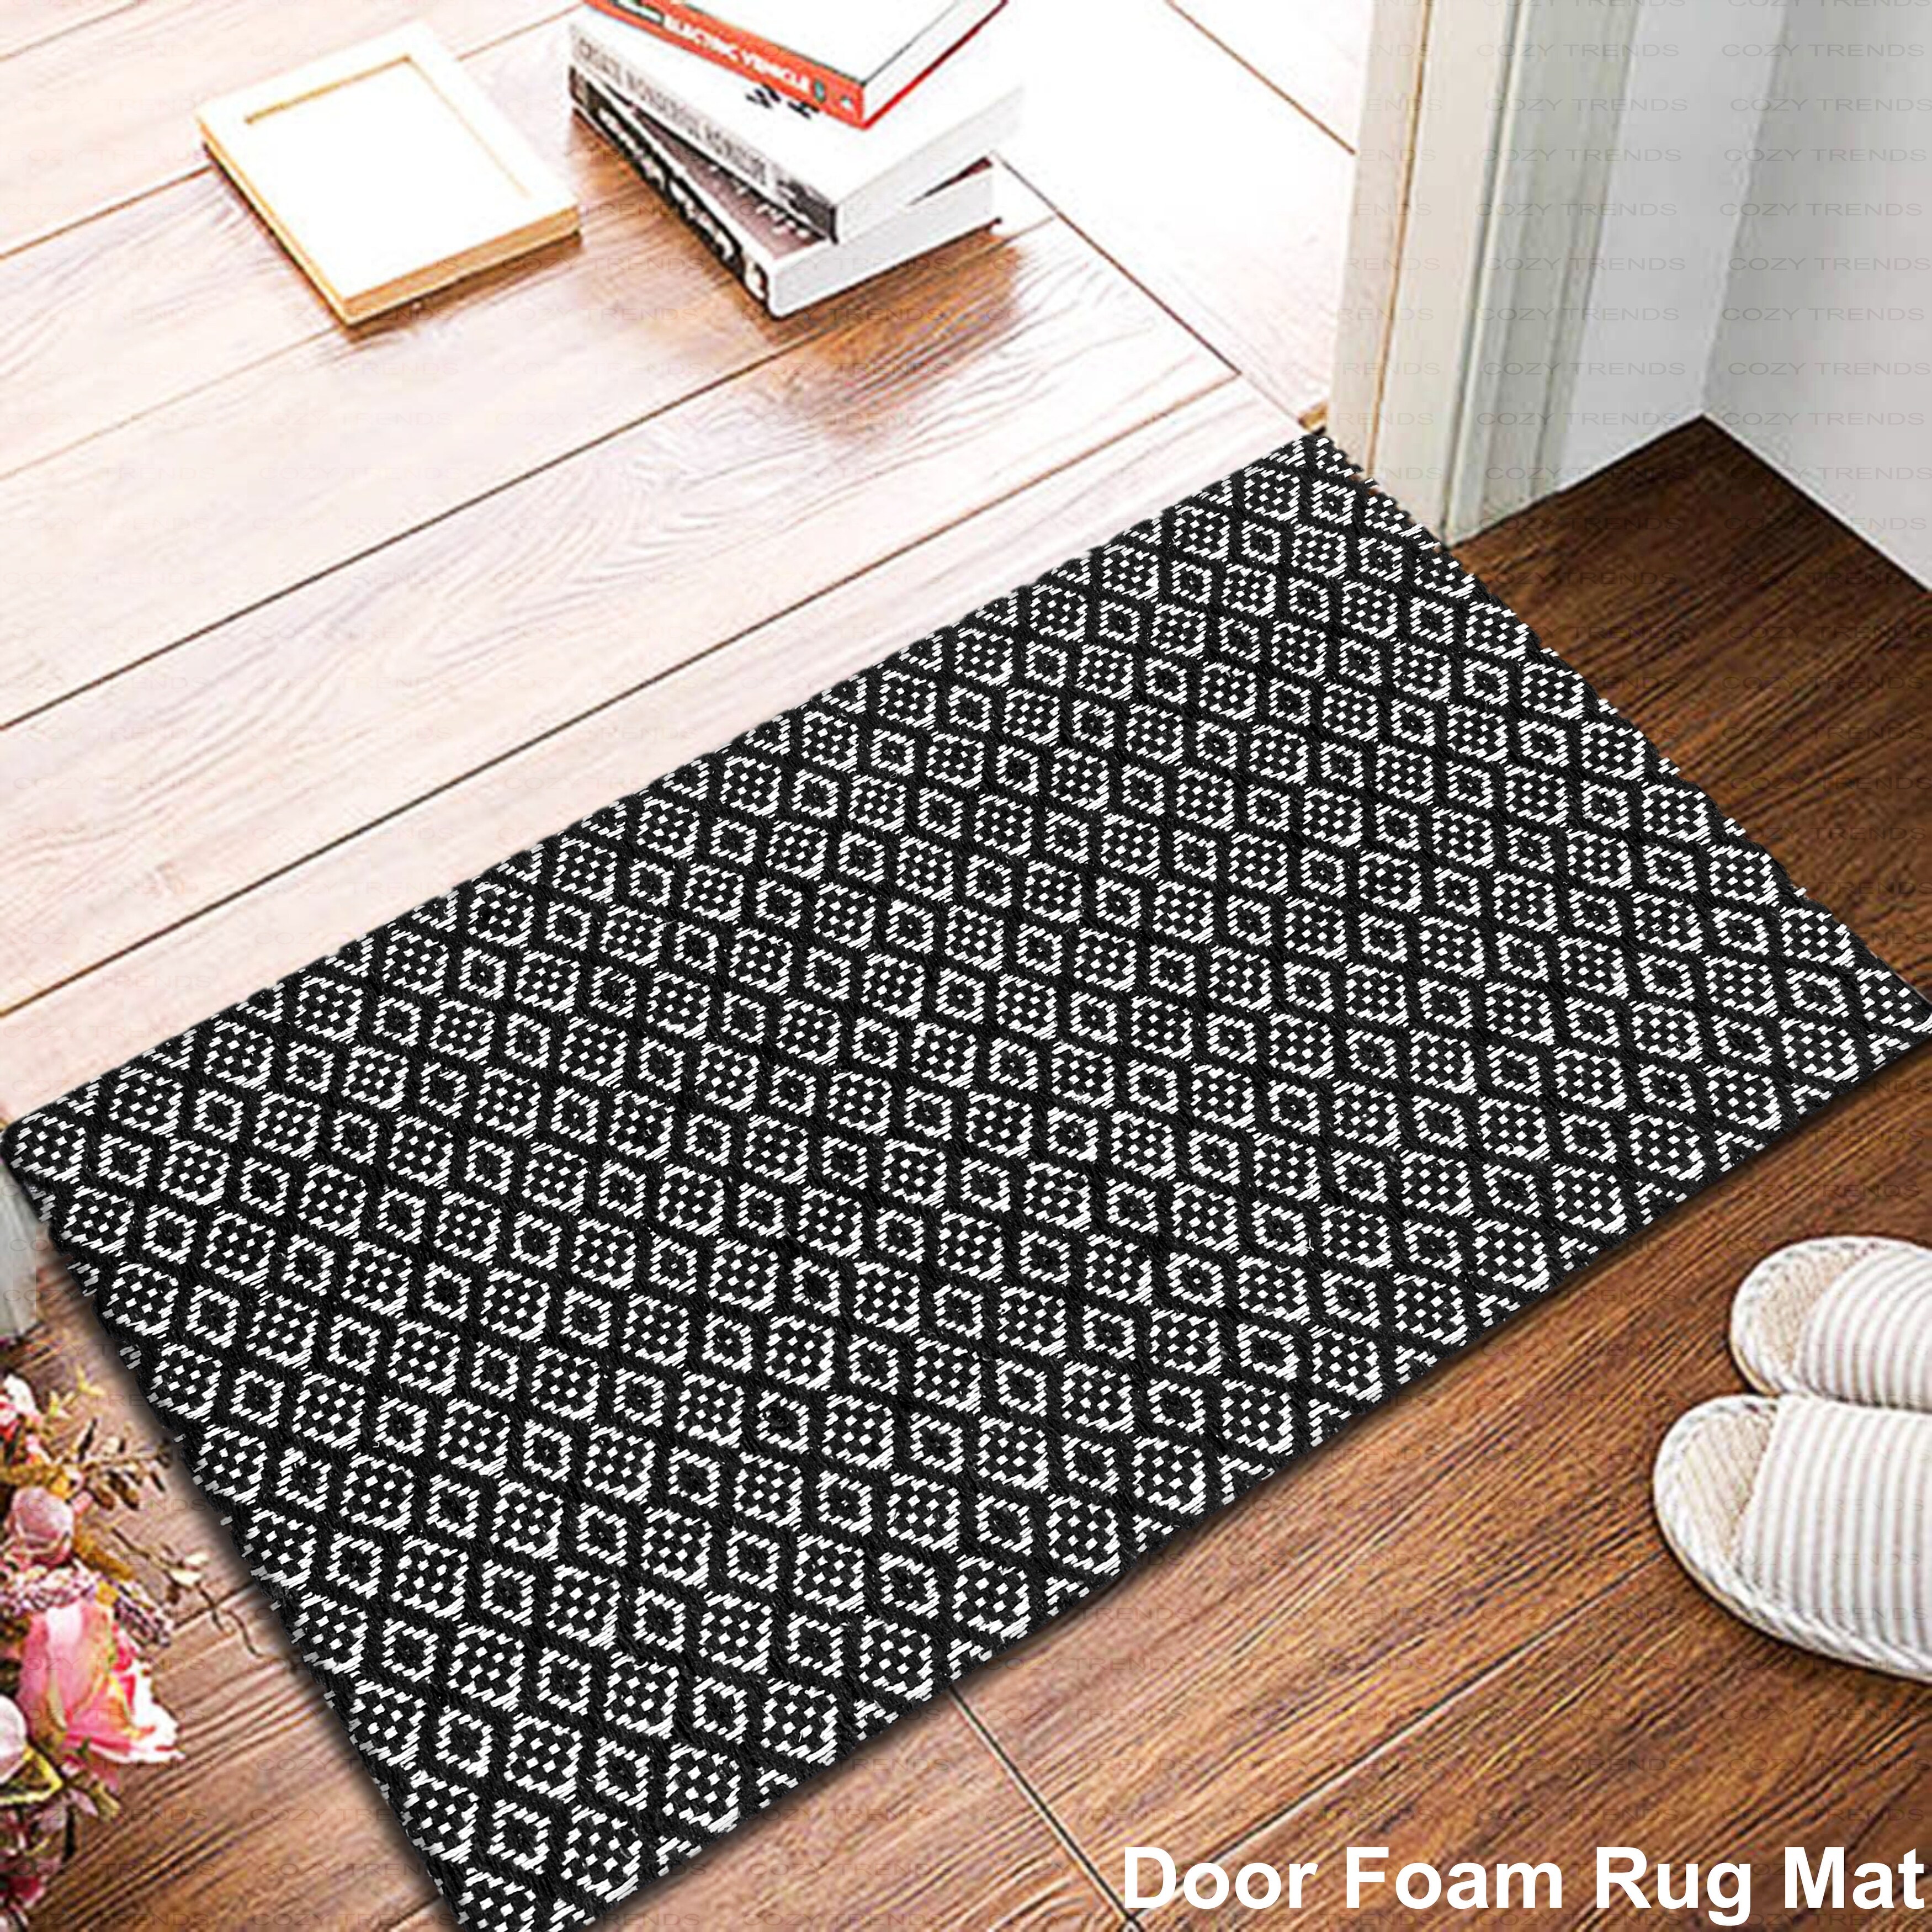 Tiveney Indoor Door Mat 2'x3', Machine Washable Bathroom Rug Small Area  Rug, Cotton Woven Indoor Outdoor Rugs Reversible Floor Mats for